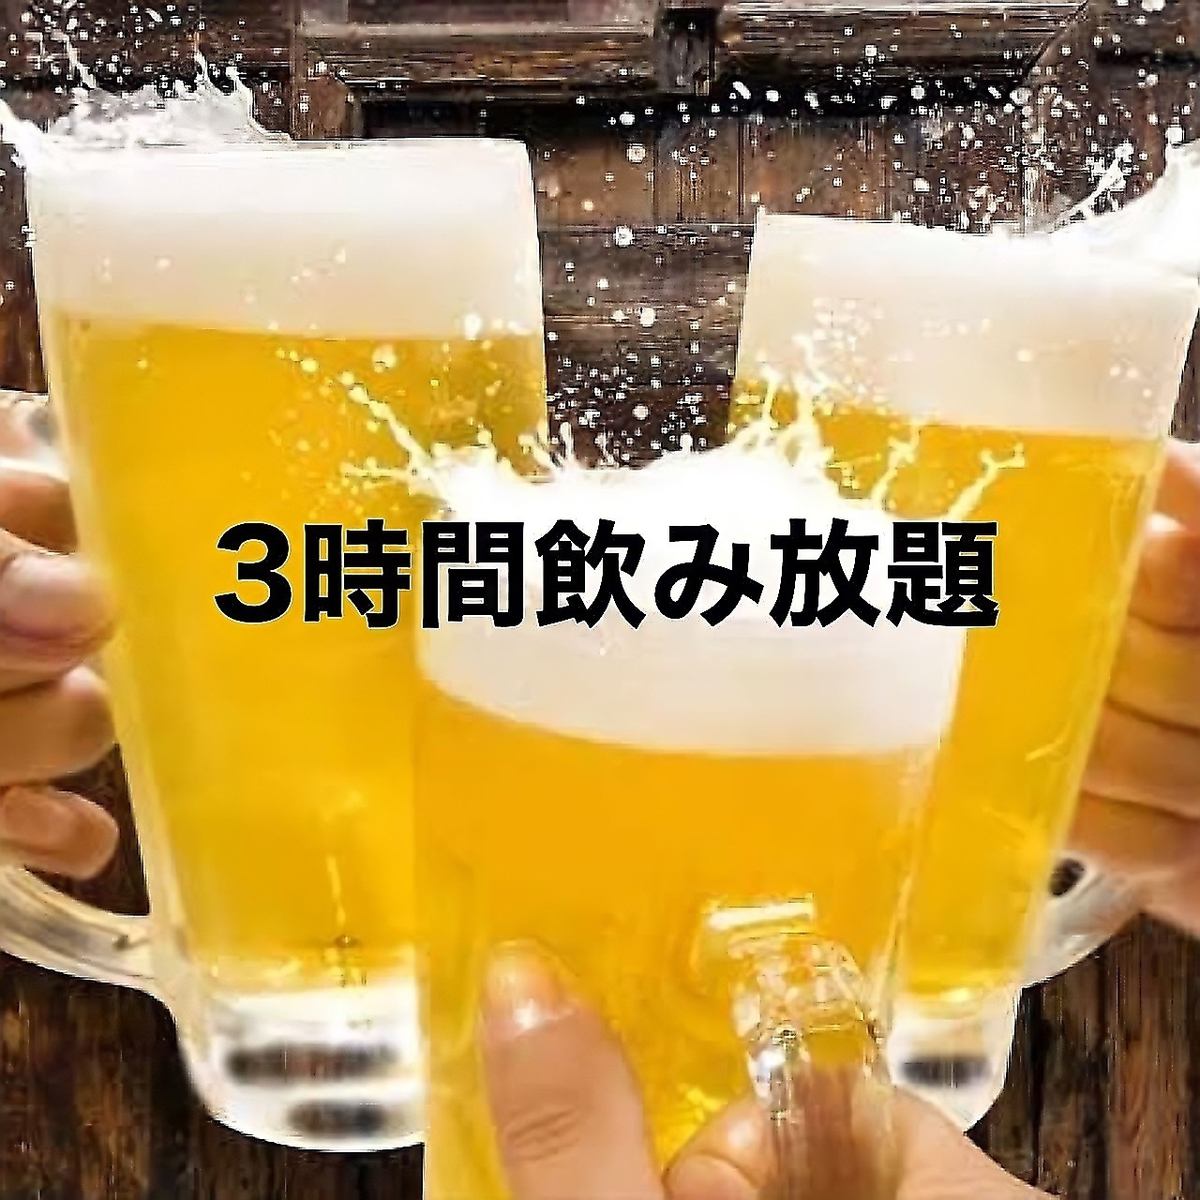 生ビールもOK★お得な単品飲み放題★2時間 777円/3時間 999円!!